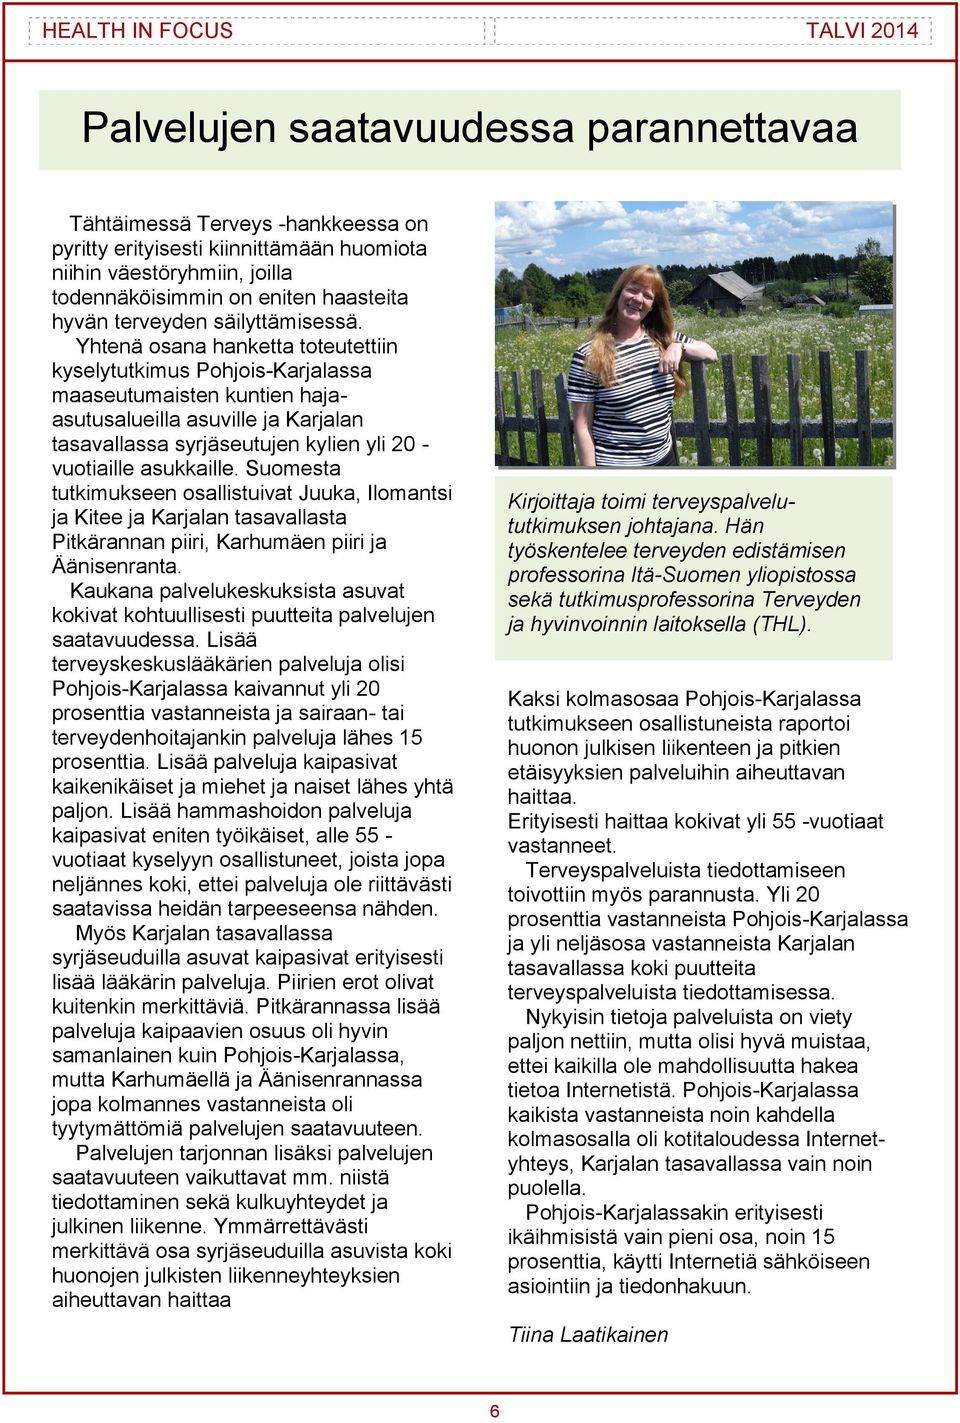 Yhtenä osana hanketta toteutettiin kyselytutkimus Pohjois-Karjalassa maaseutumaisten kuntien hajaasutusalueilla asuville ja Karjalan tasavallassa syrjäseutujen kylien yli 20 - vuotiaille asukkaille.